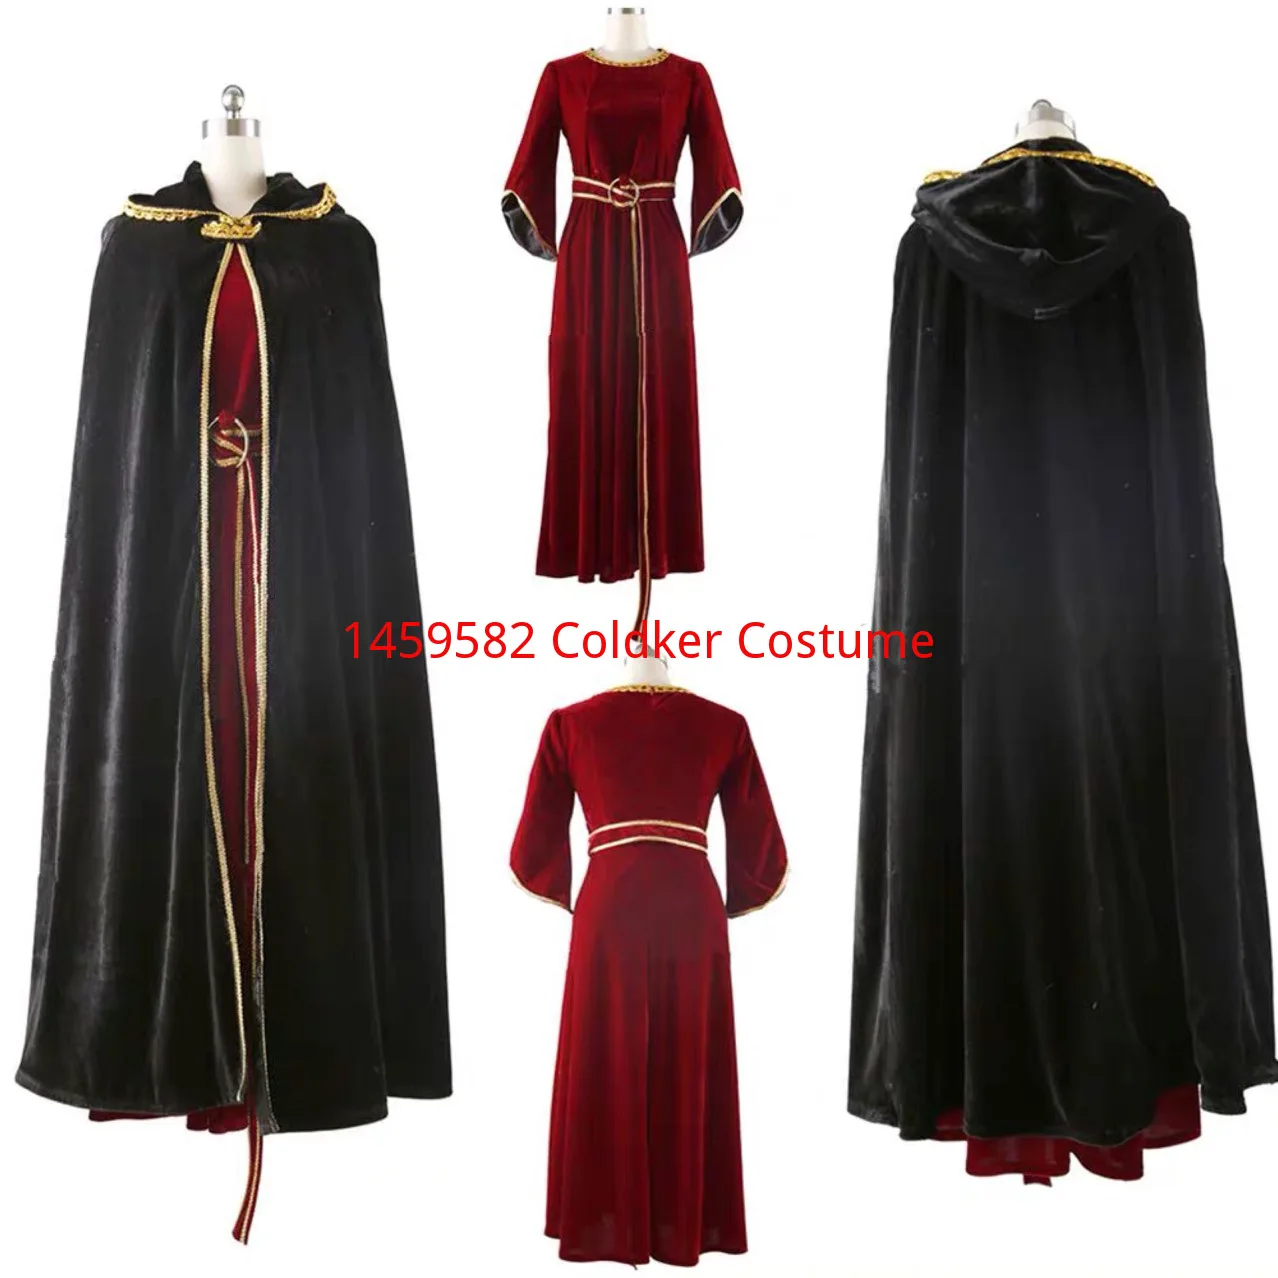 vestido-de-festa-preto-traje-de-cosplay-gotico-conjuntos-completos-alta-qualidade-dia-das-bruxas-natal-mae-punho-vermelho